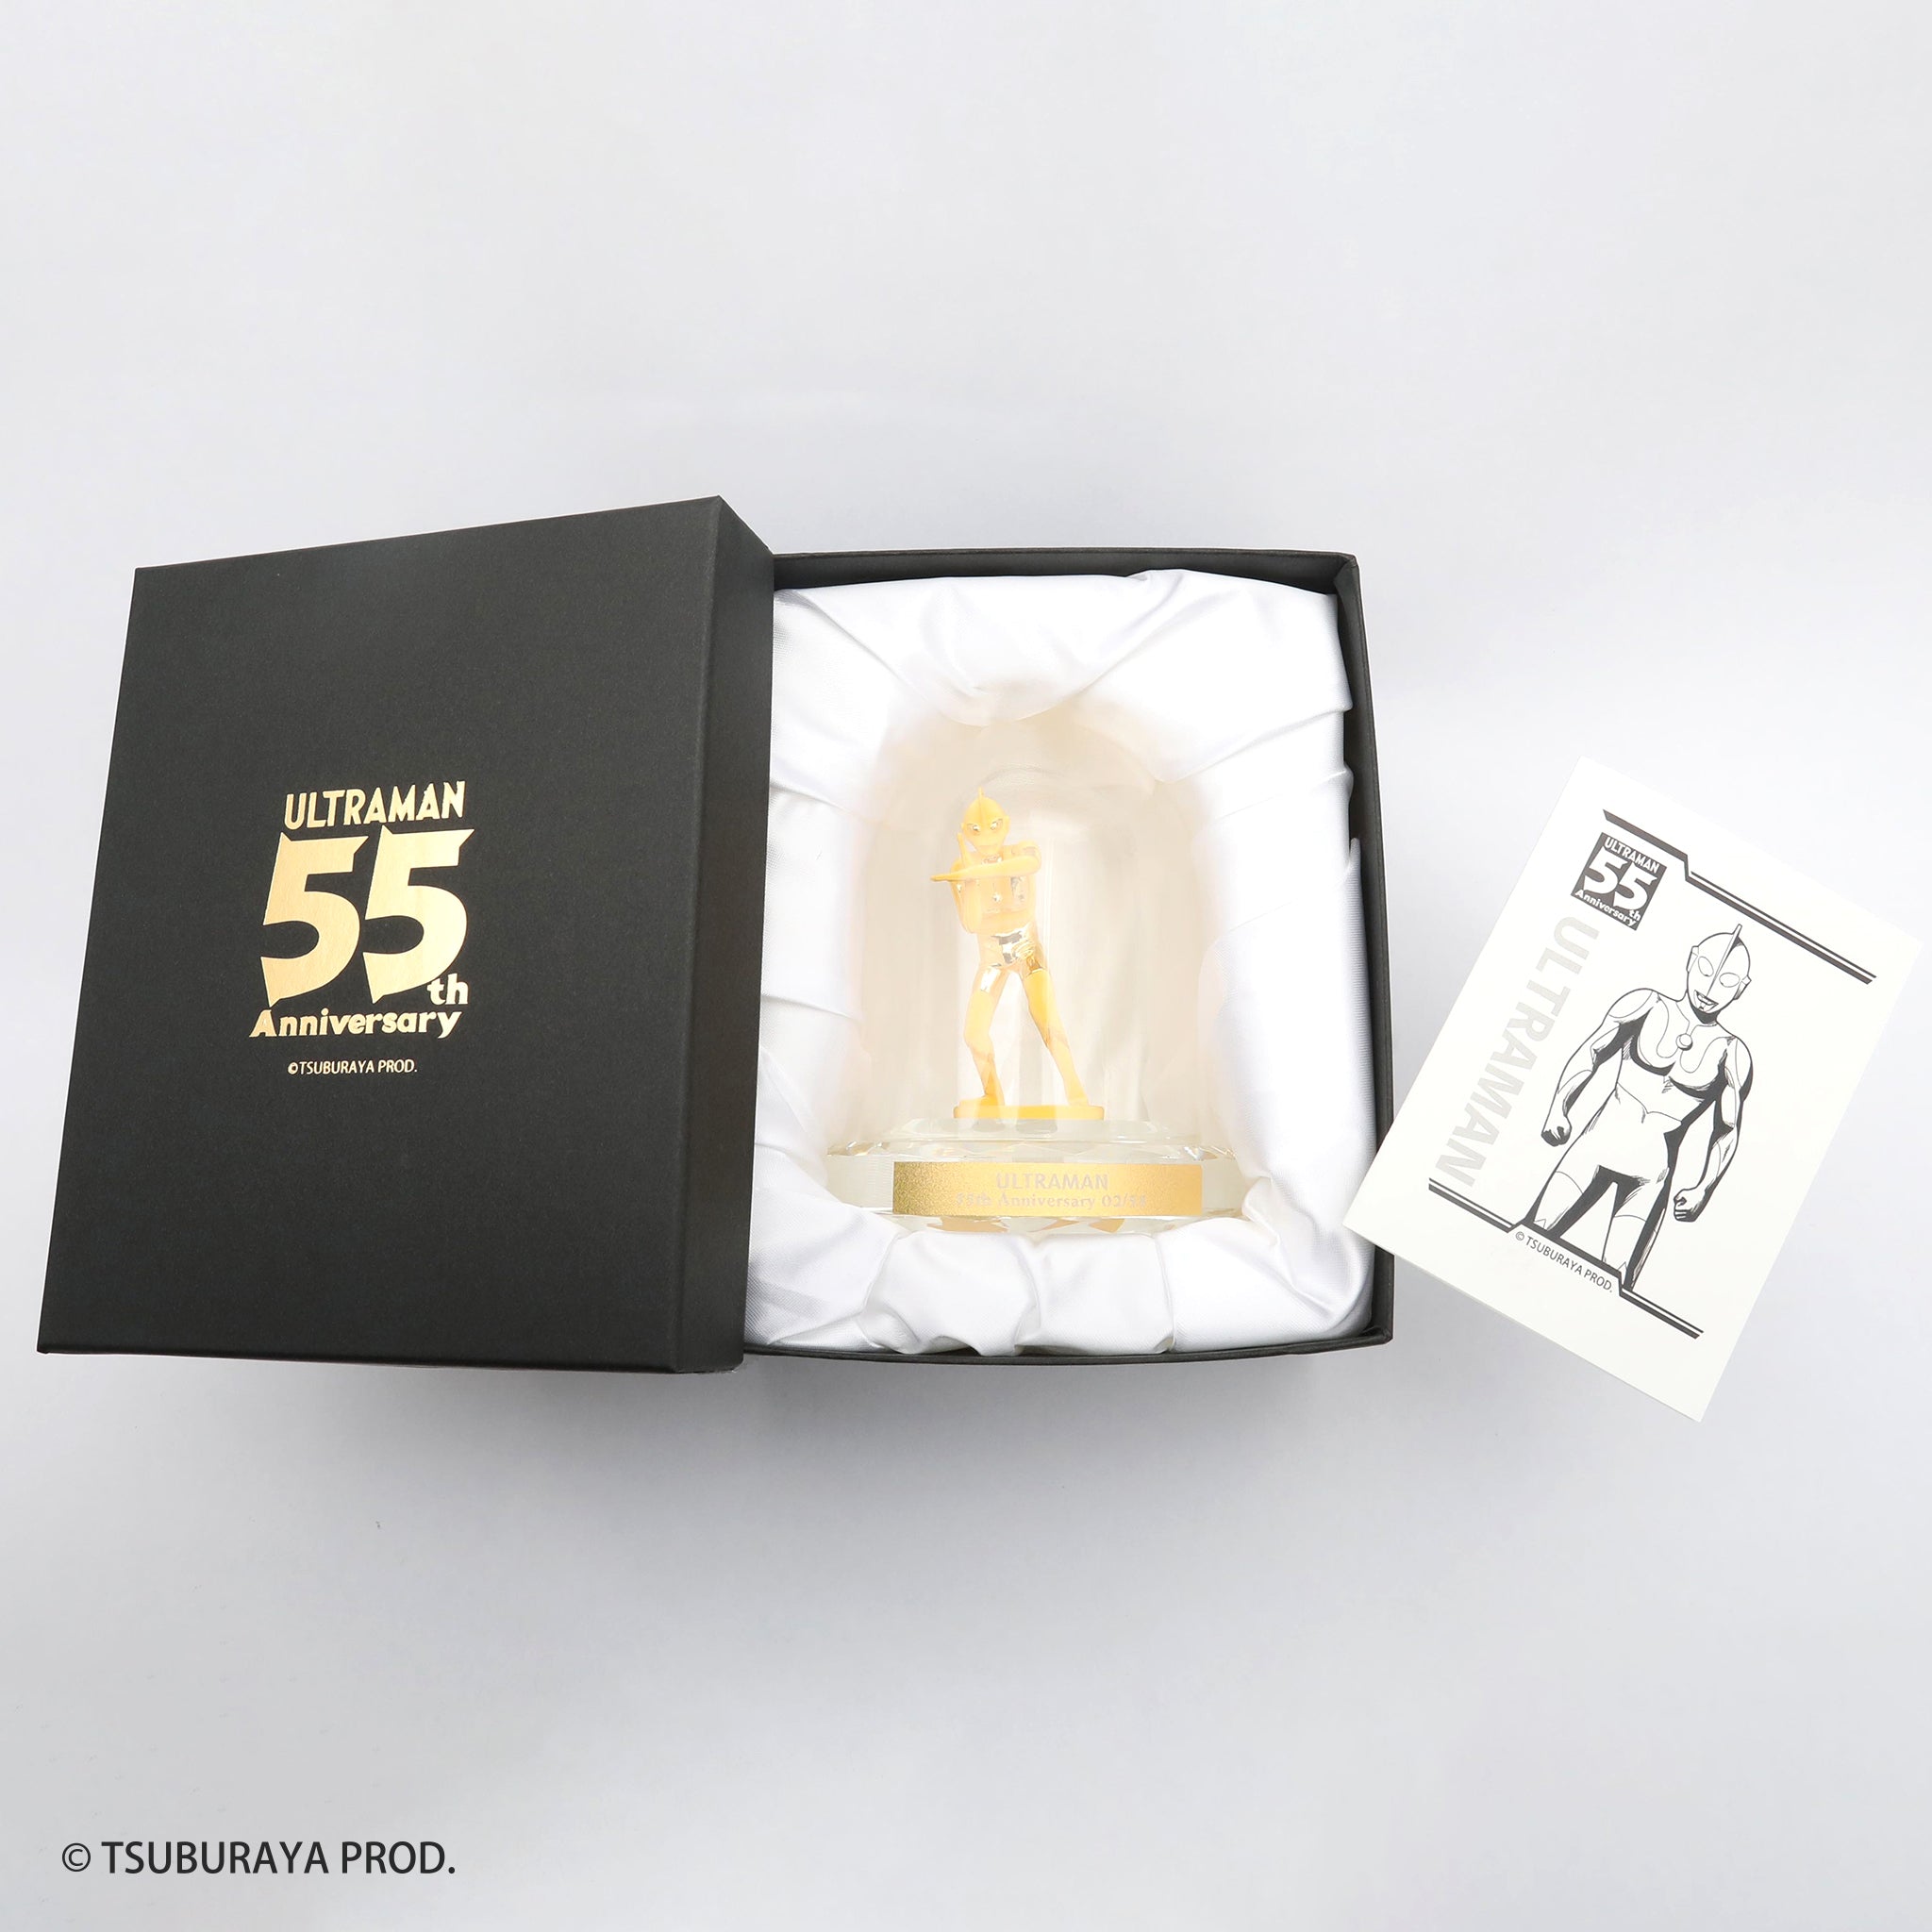 K24金製品(純金/ウルトラマン 55th Anniversary/フィギア/13g)《23C60101》